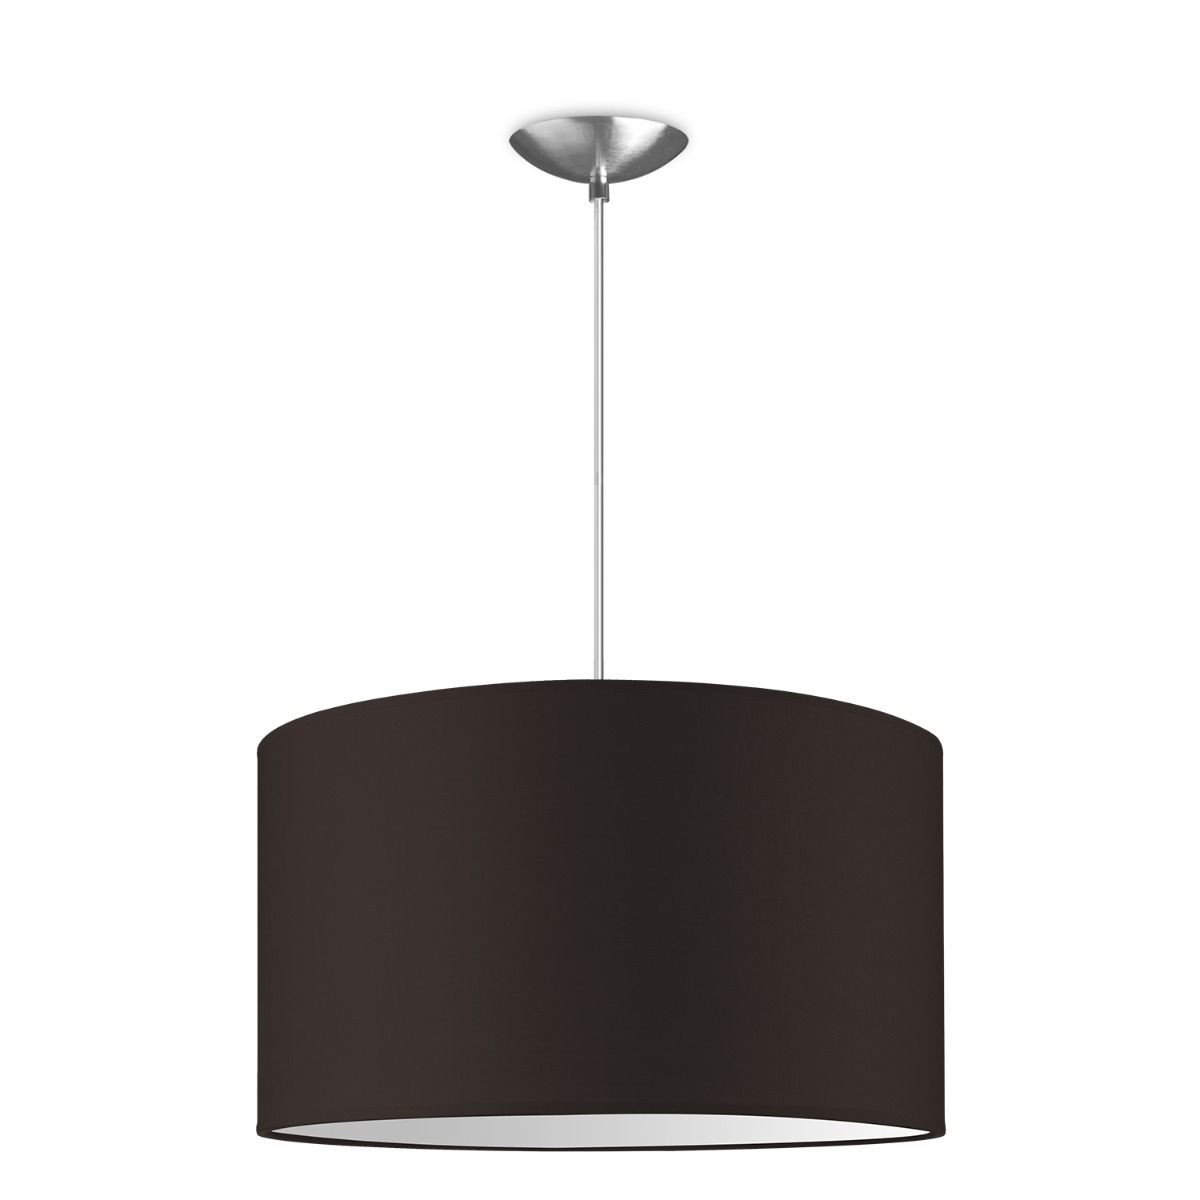 Light depot - hanglamp basic bling Ø 40 cm - bruin - Outlet